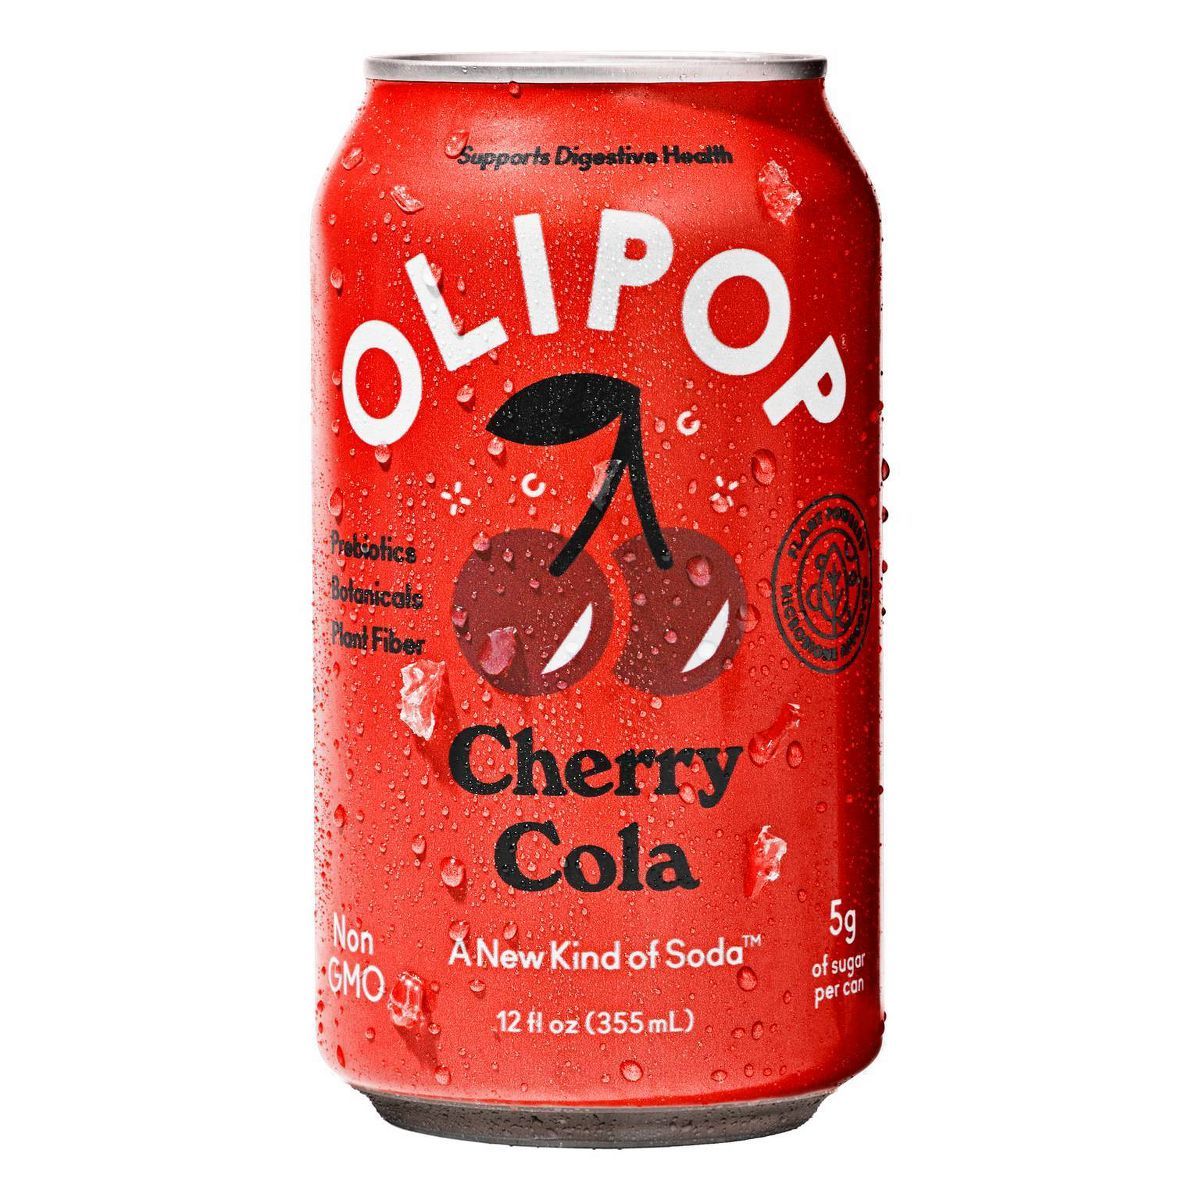 OLIPOP Cherry Cola Prebiotic Soda - 12 fl oz | Target